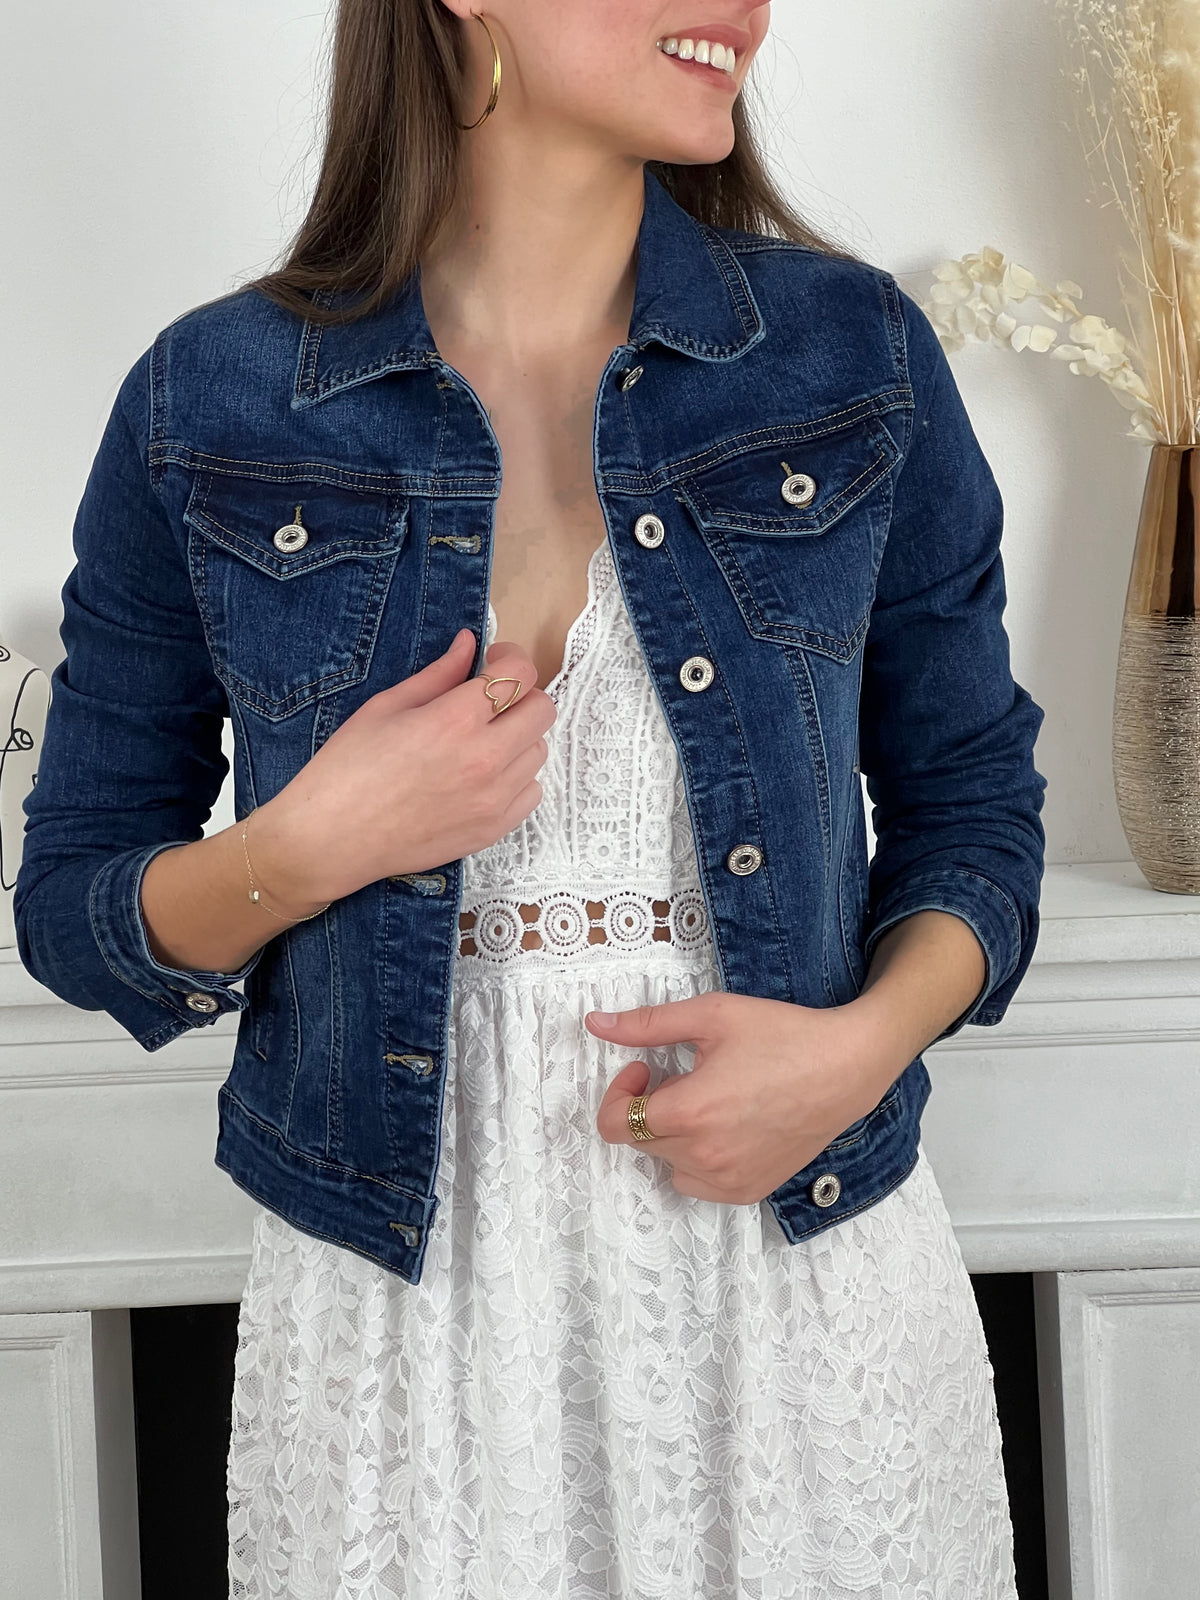 Découvrez notre veste en jean Cazia, en bleu foncé basique ! Parfait pour ajouter une touche de style à n'importe quelle tenue, cette veste est un essentiel dans votre garde-robe.